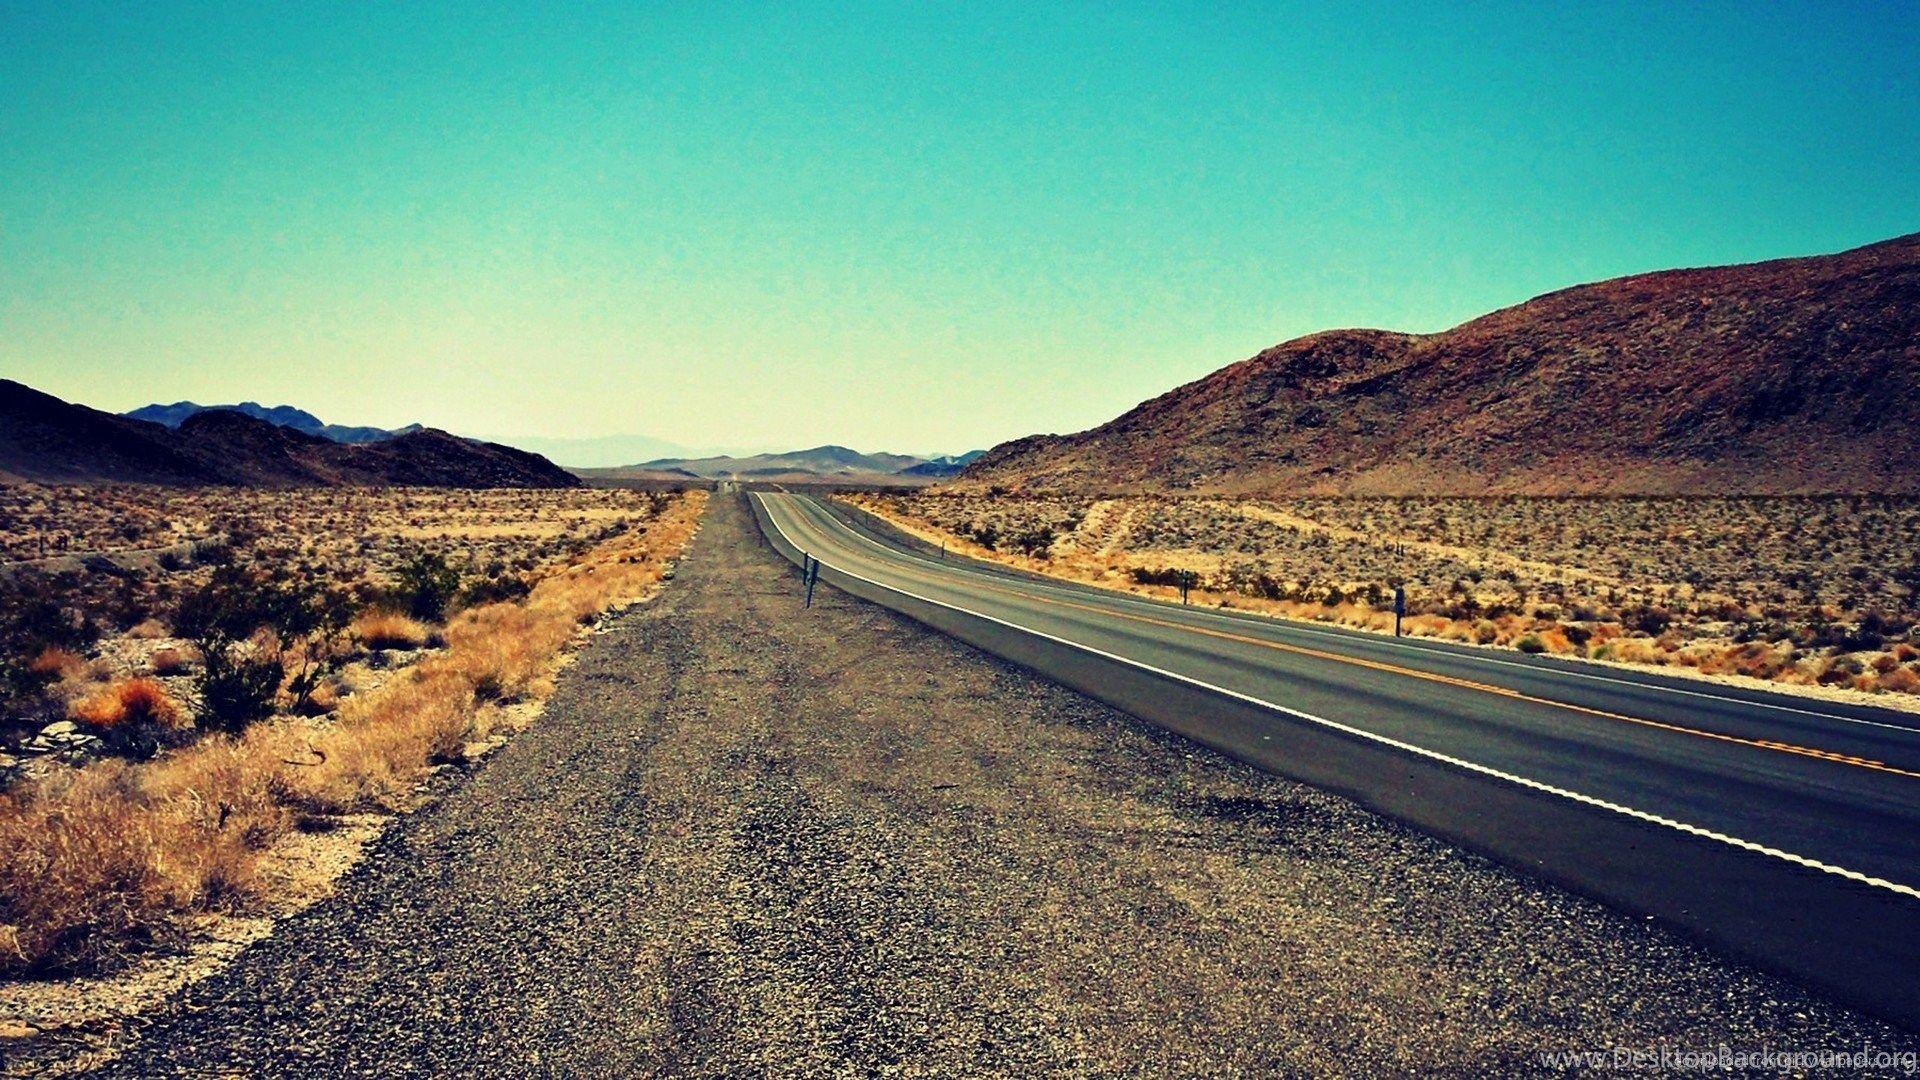 Desert Road Background